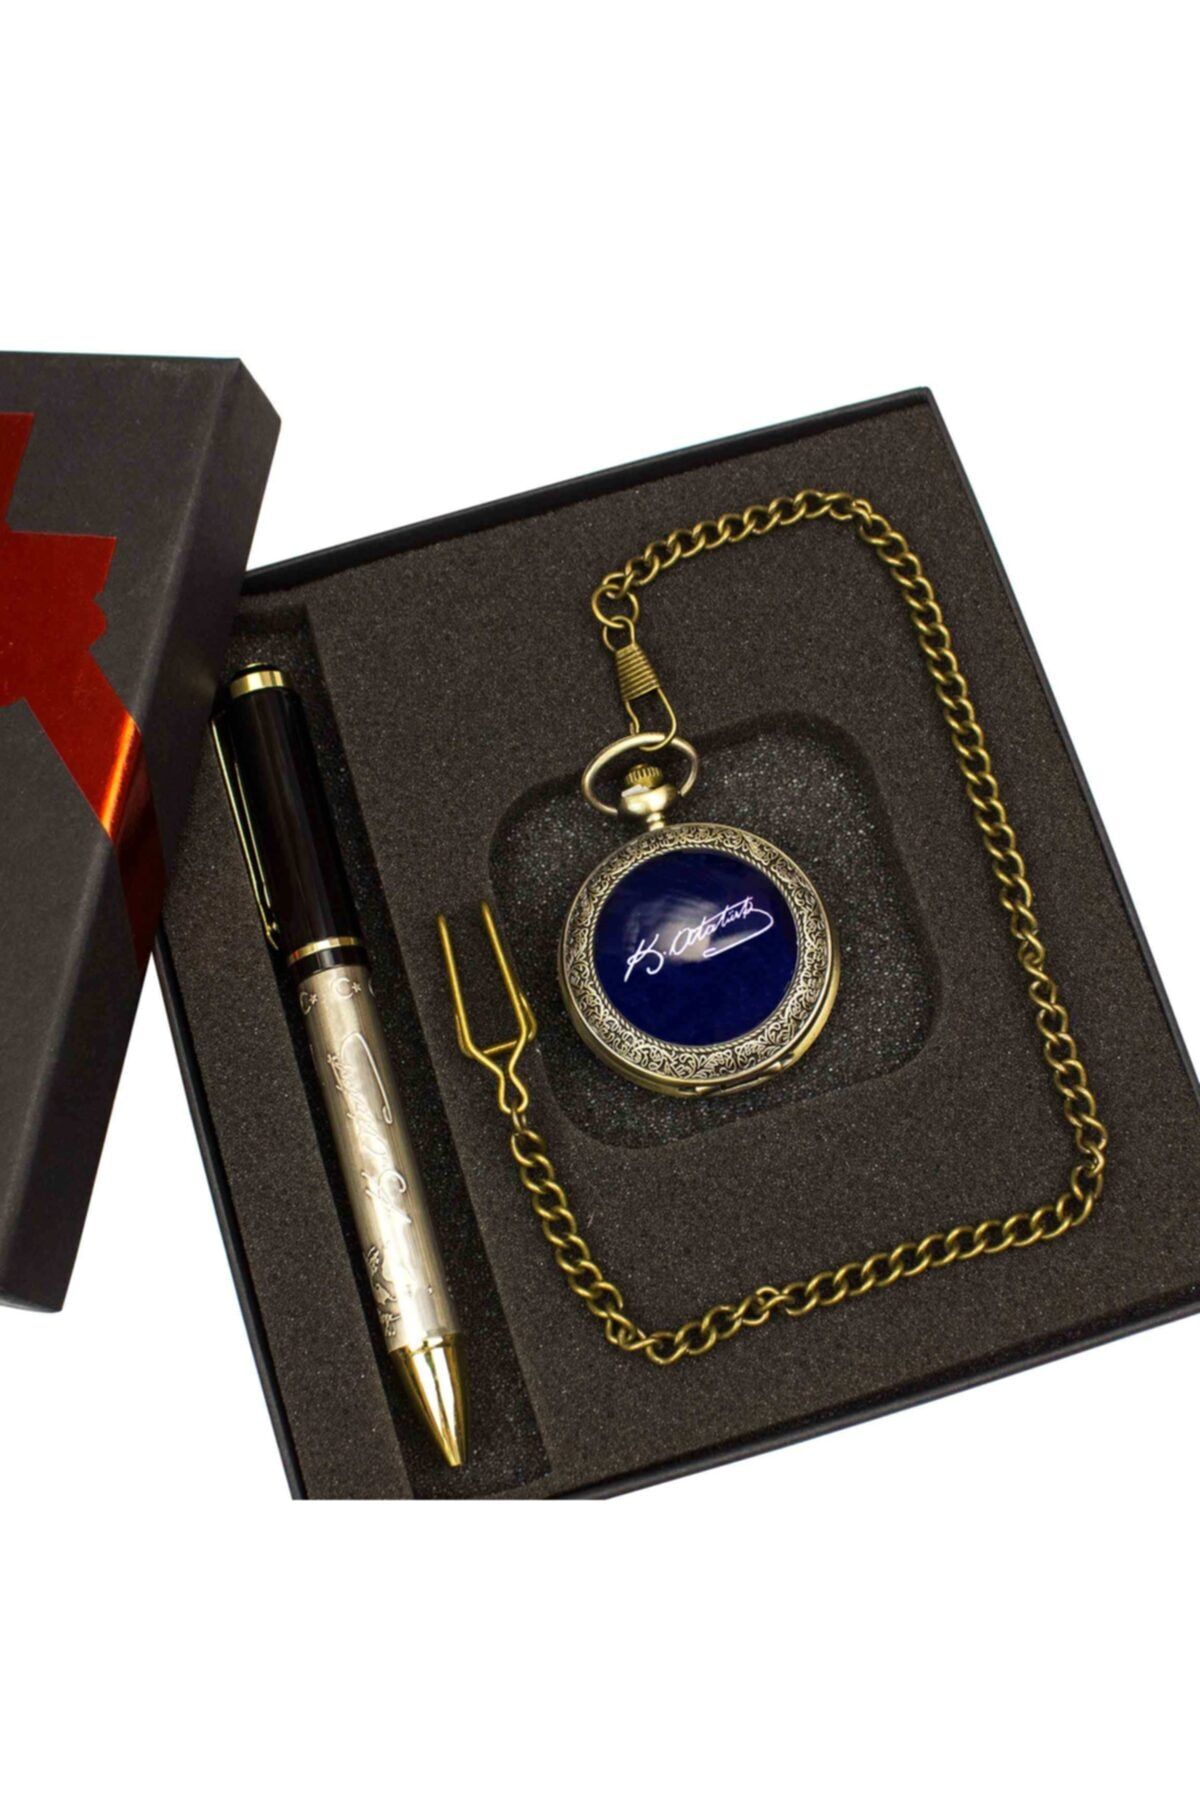 hediyerengi Atatürk Temalı Köstekli Saat Ve Kalem Seti Tasarım Kutulu M4